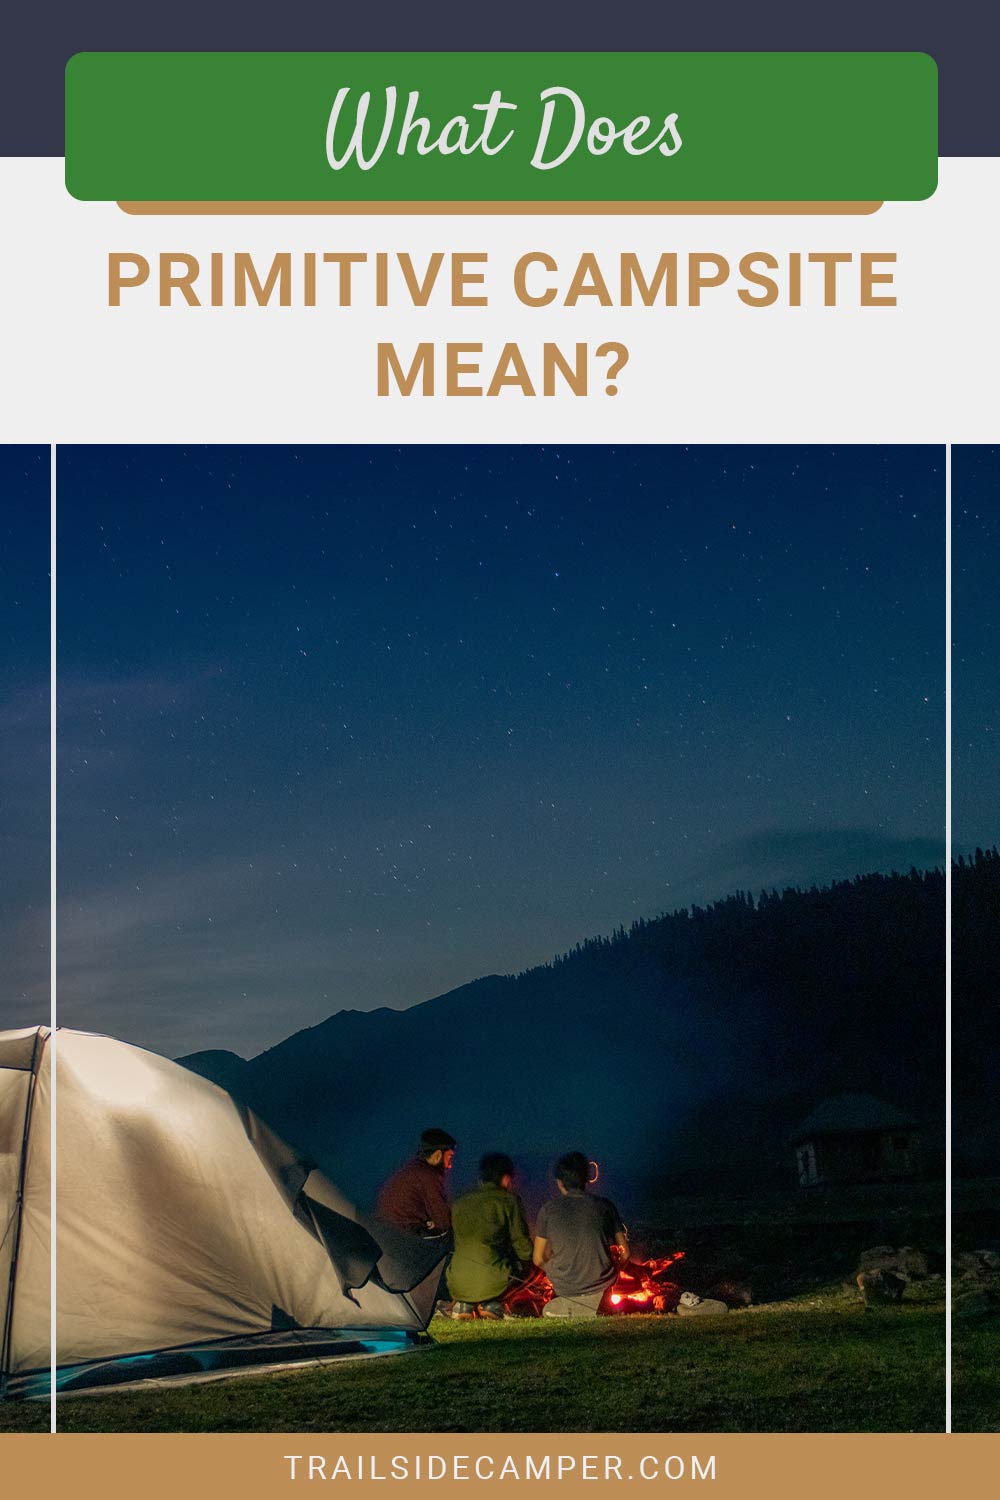 What Does Primitive Campsite Mean?